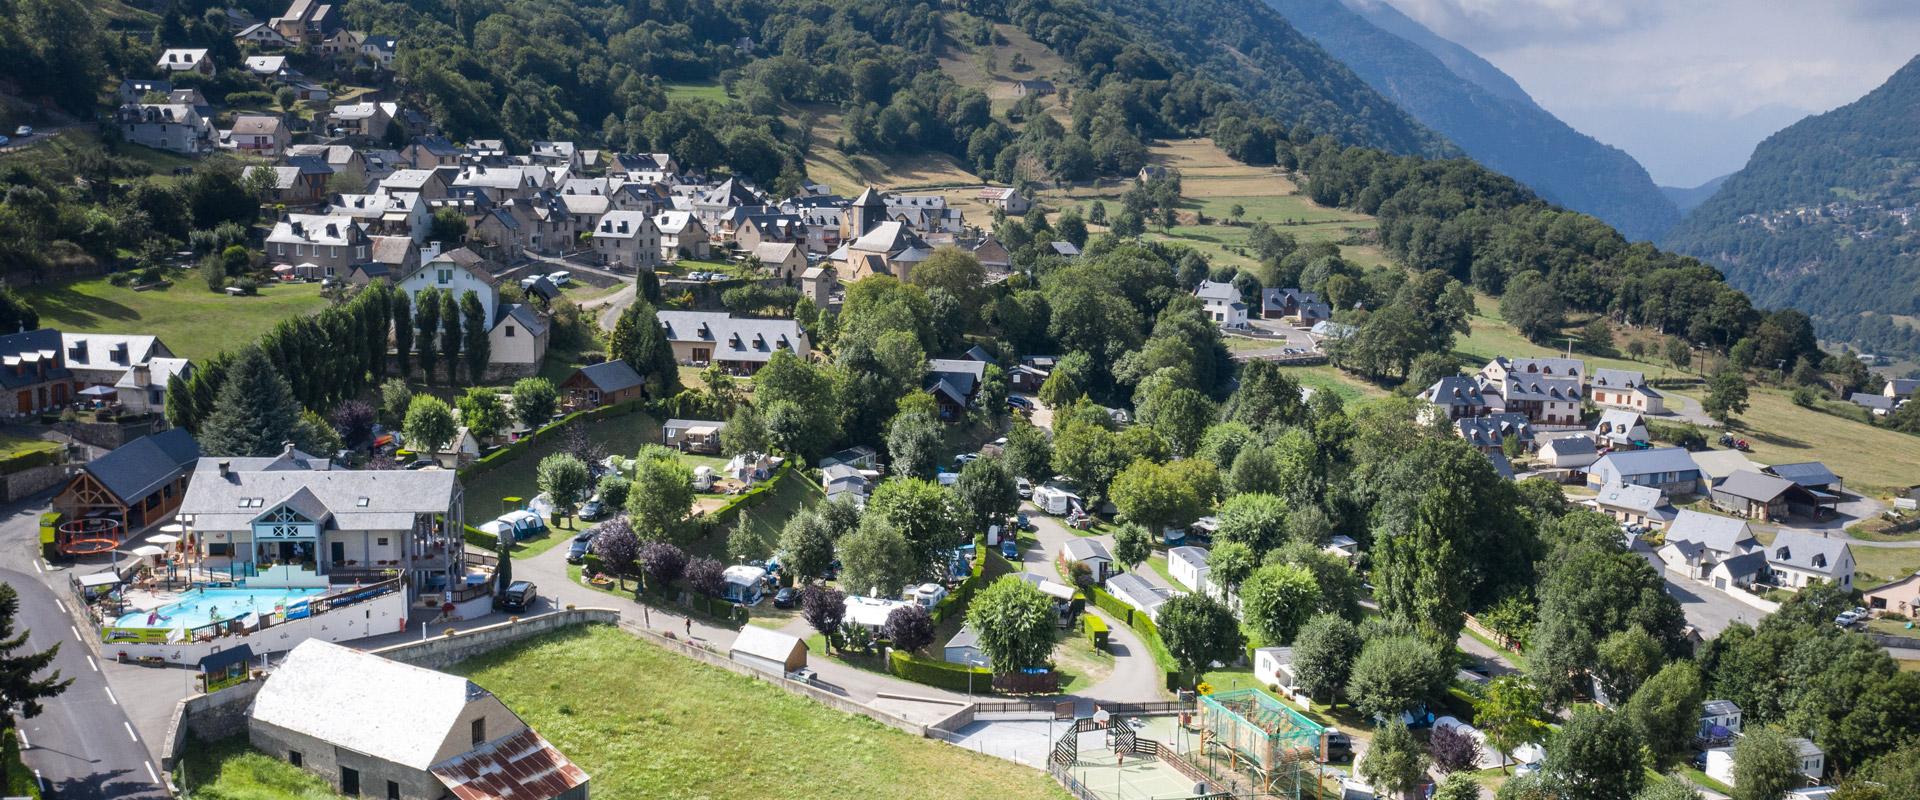 Nieuws over kamperen in de Hautes-Pyrénées